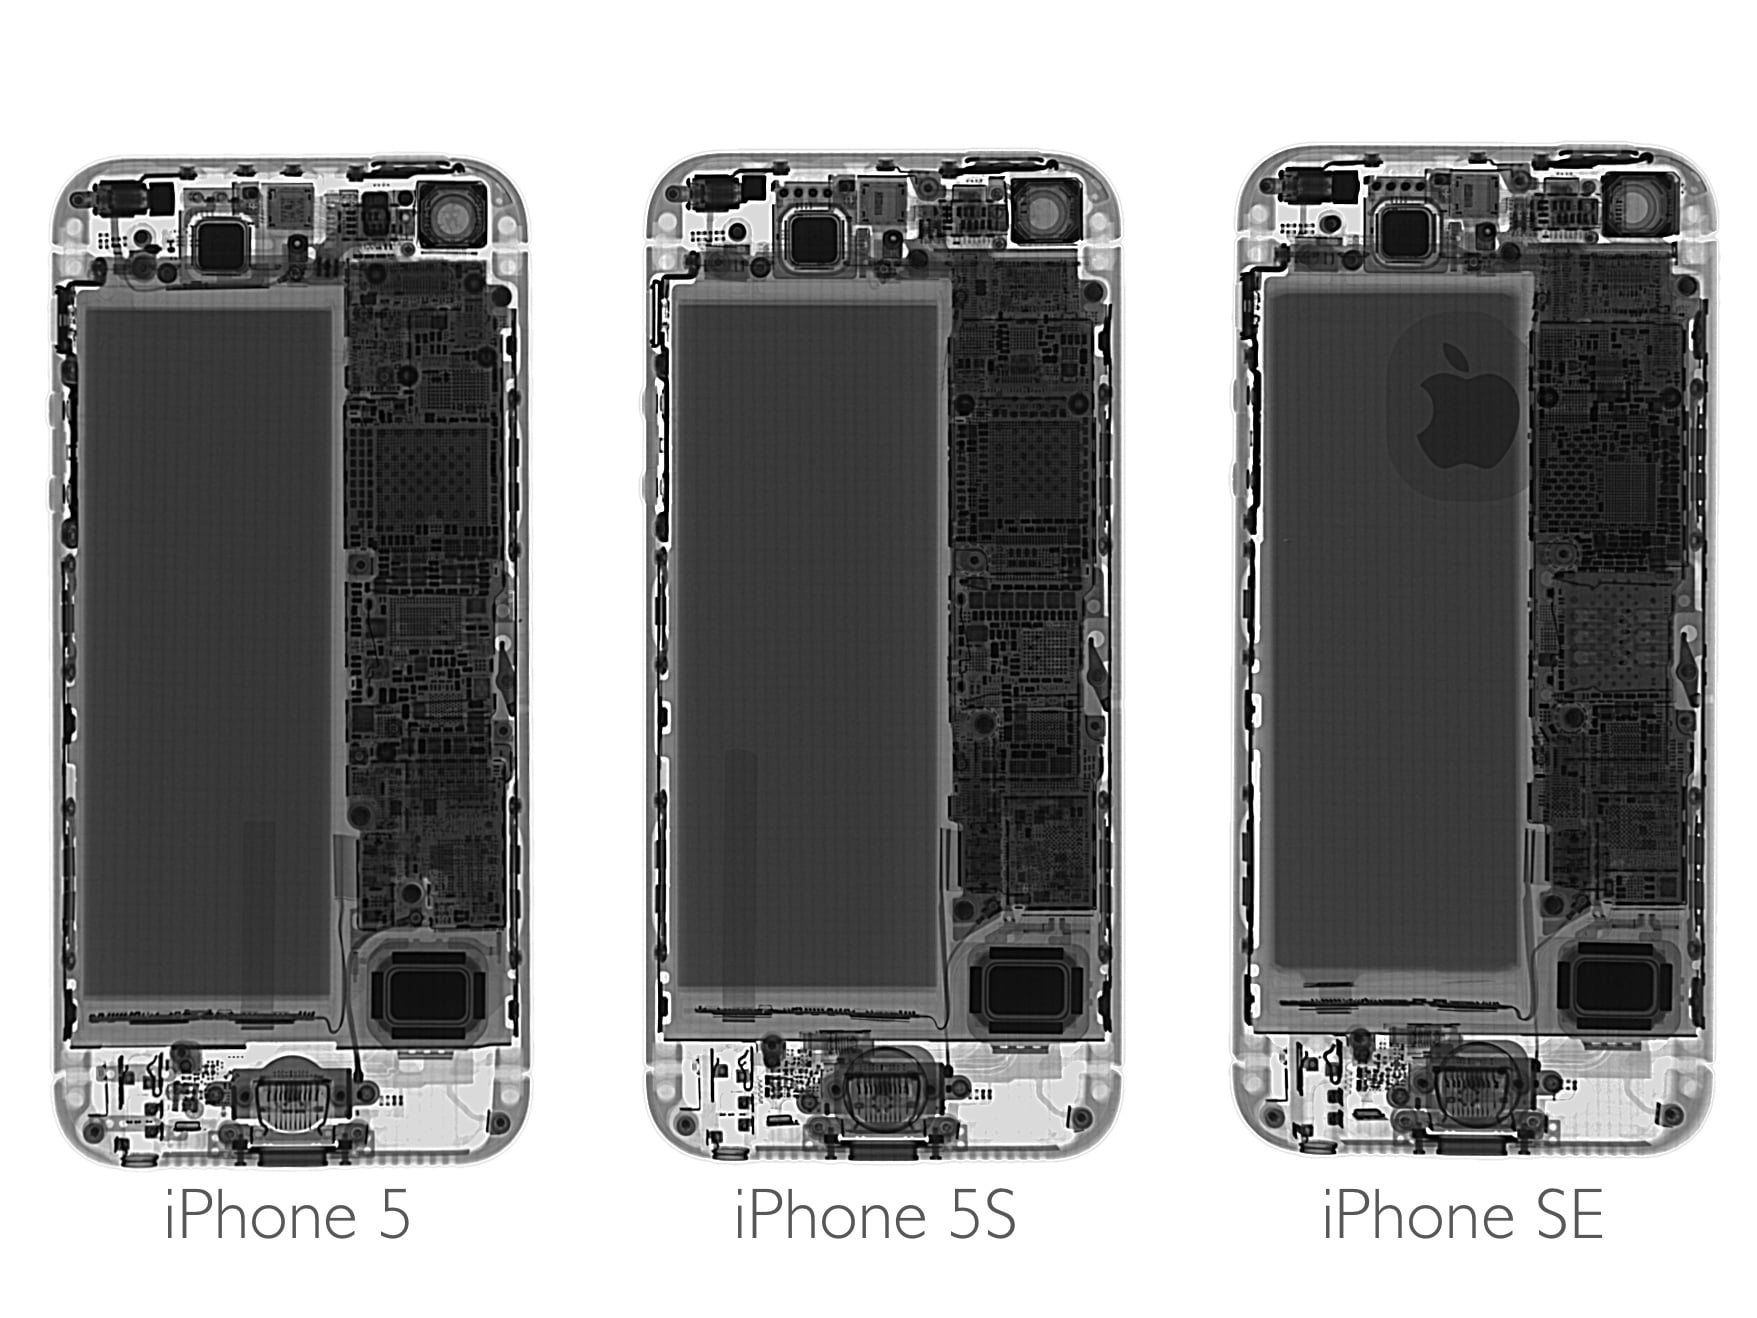 Iphone Se の分解レポ 設計は Iphone 5s と殆ど同じで素人でもバッテリー交換可能 Ipod Love